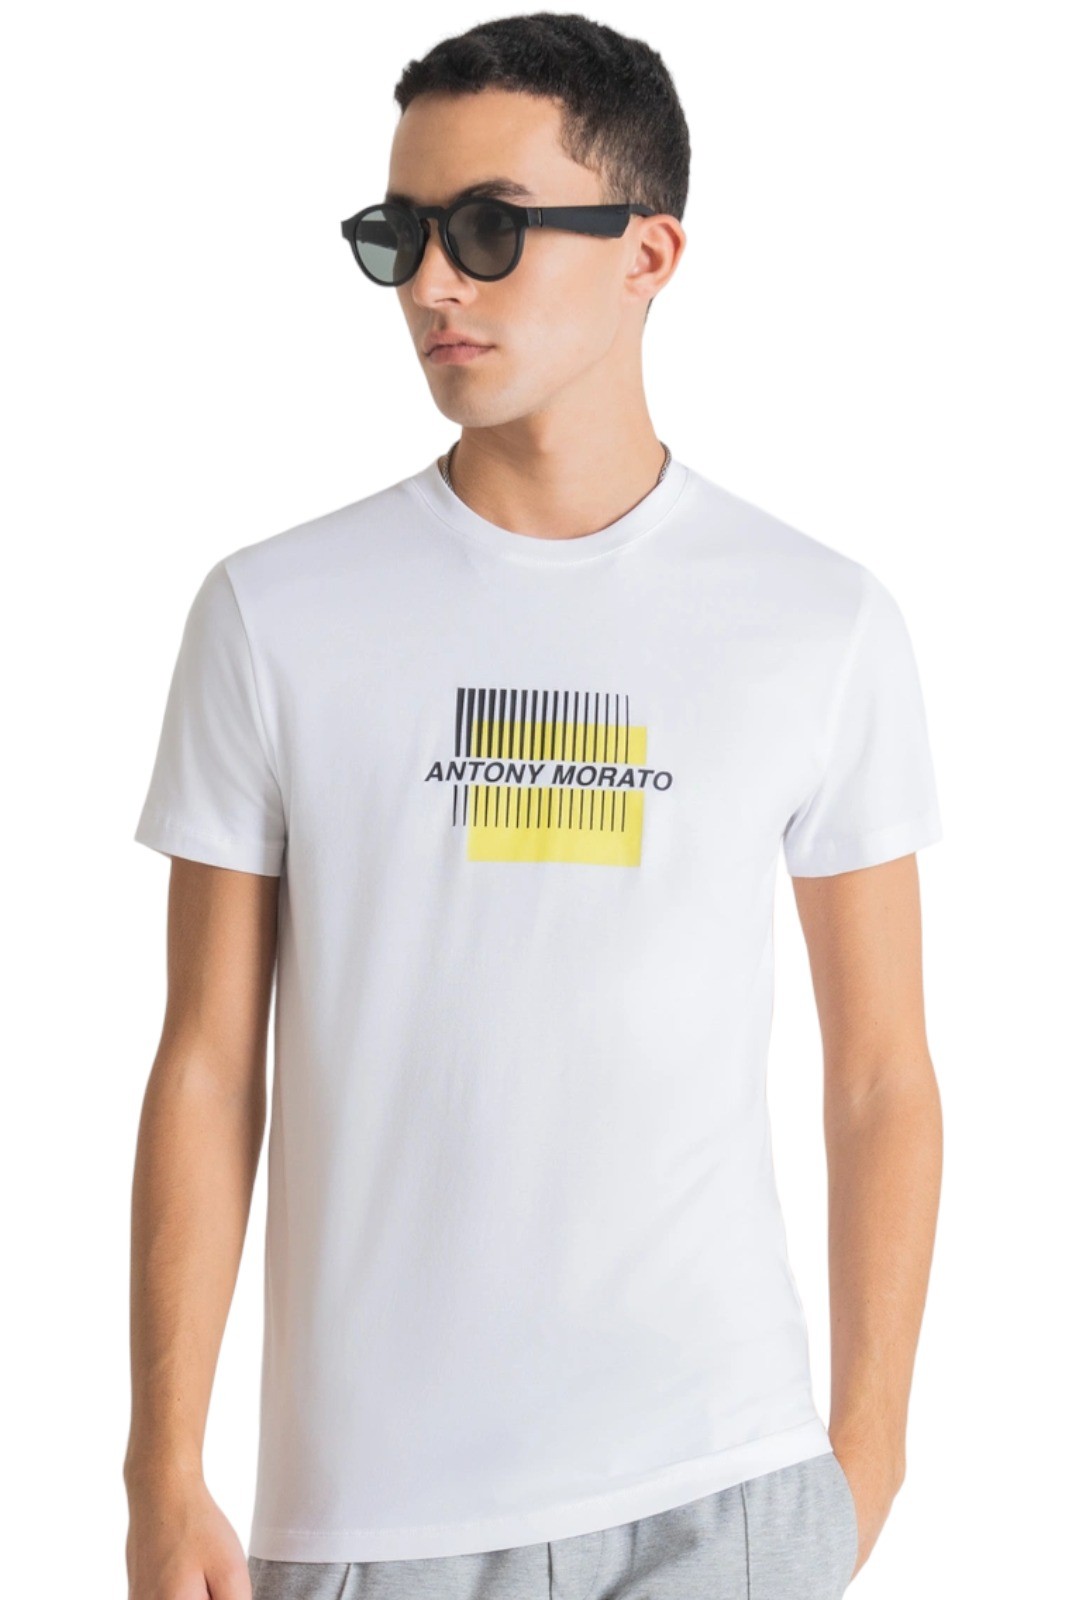 Alas Recuerdo abrigo Camiseta Antony Morato Slim Algodon Logo Relieve Blanco